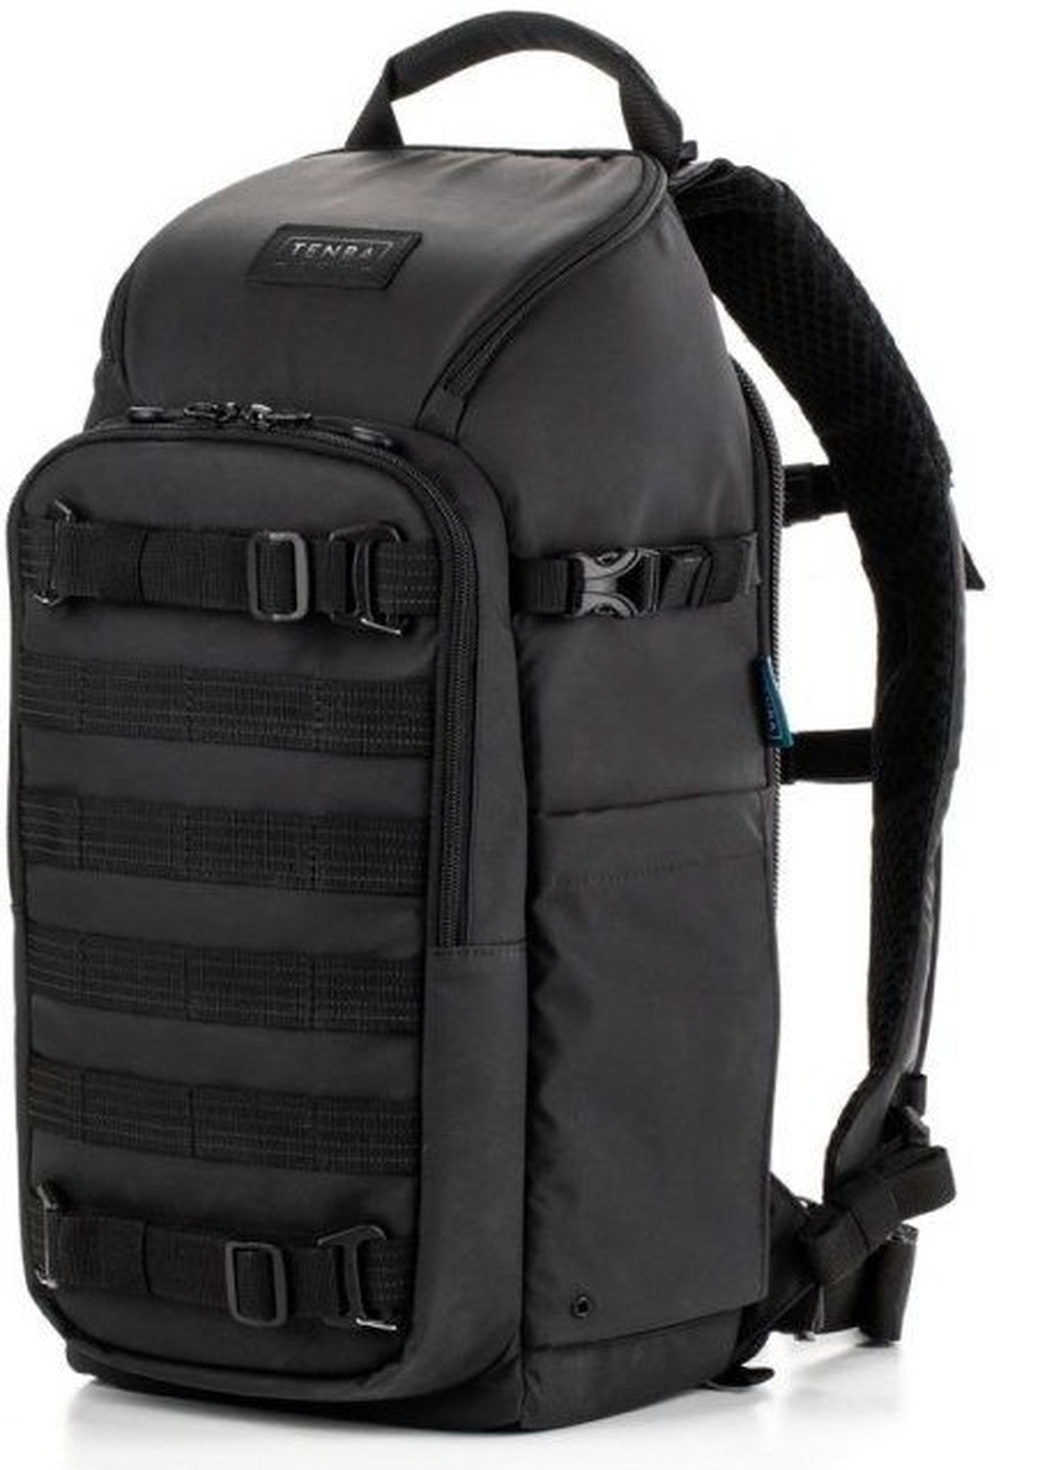 Рюкзак Tenba Axis v2 Tactical Backpack 16 для фототехники фото